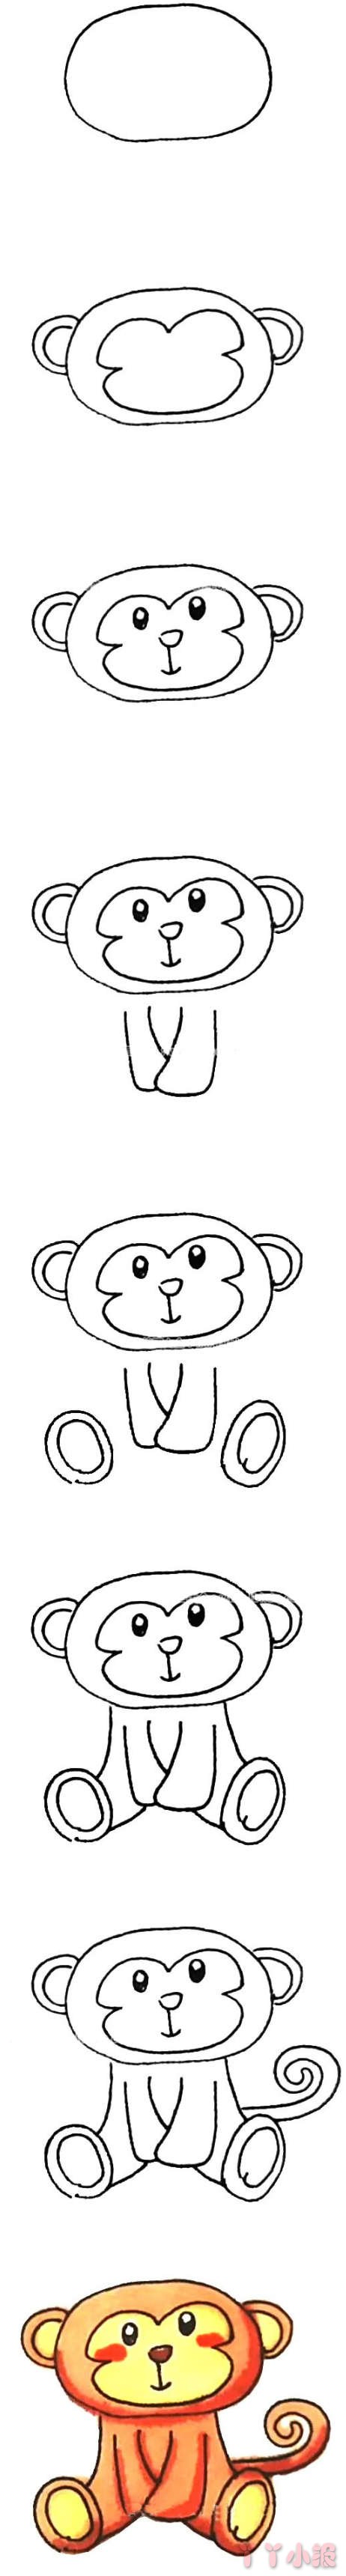  可爱小猴子简笔画图片 小猴子怎么画涂色